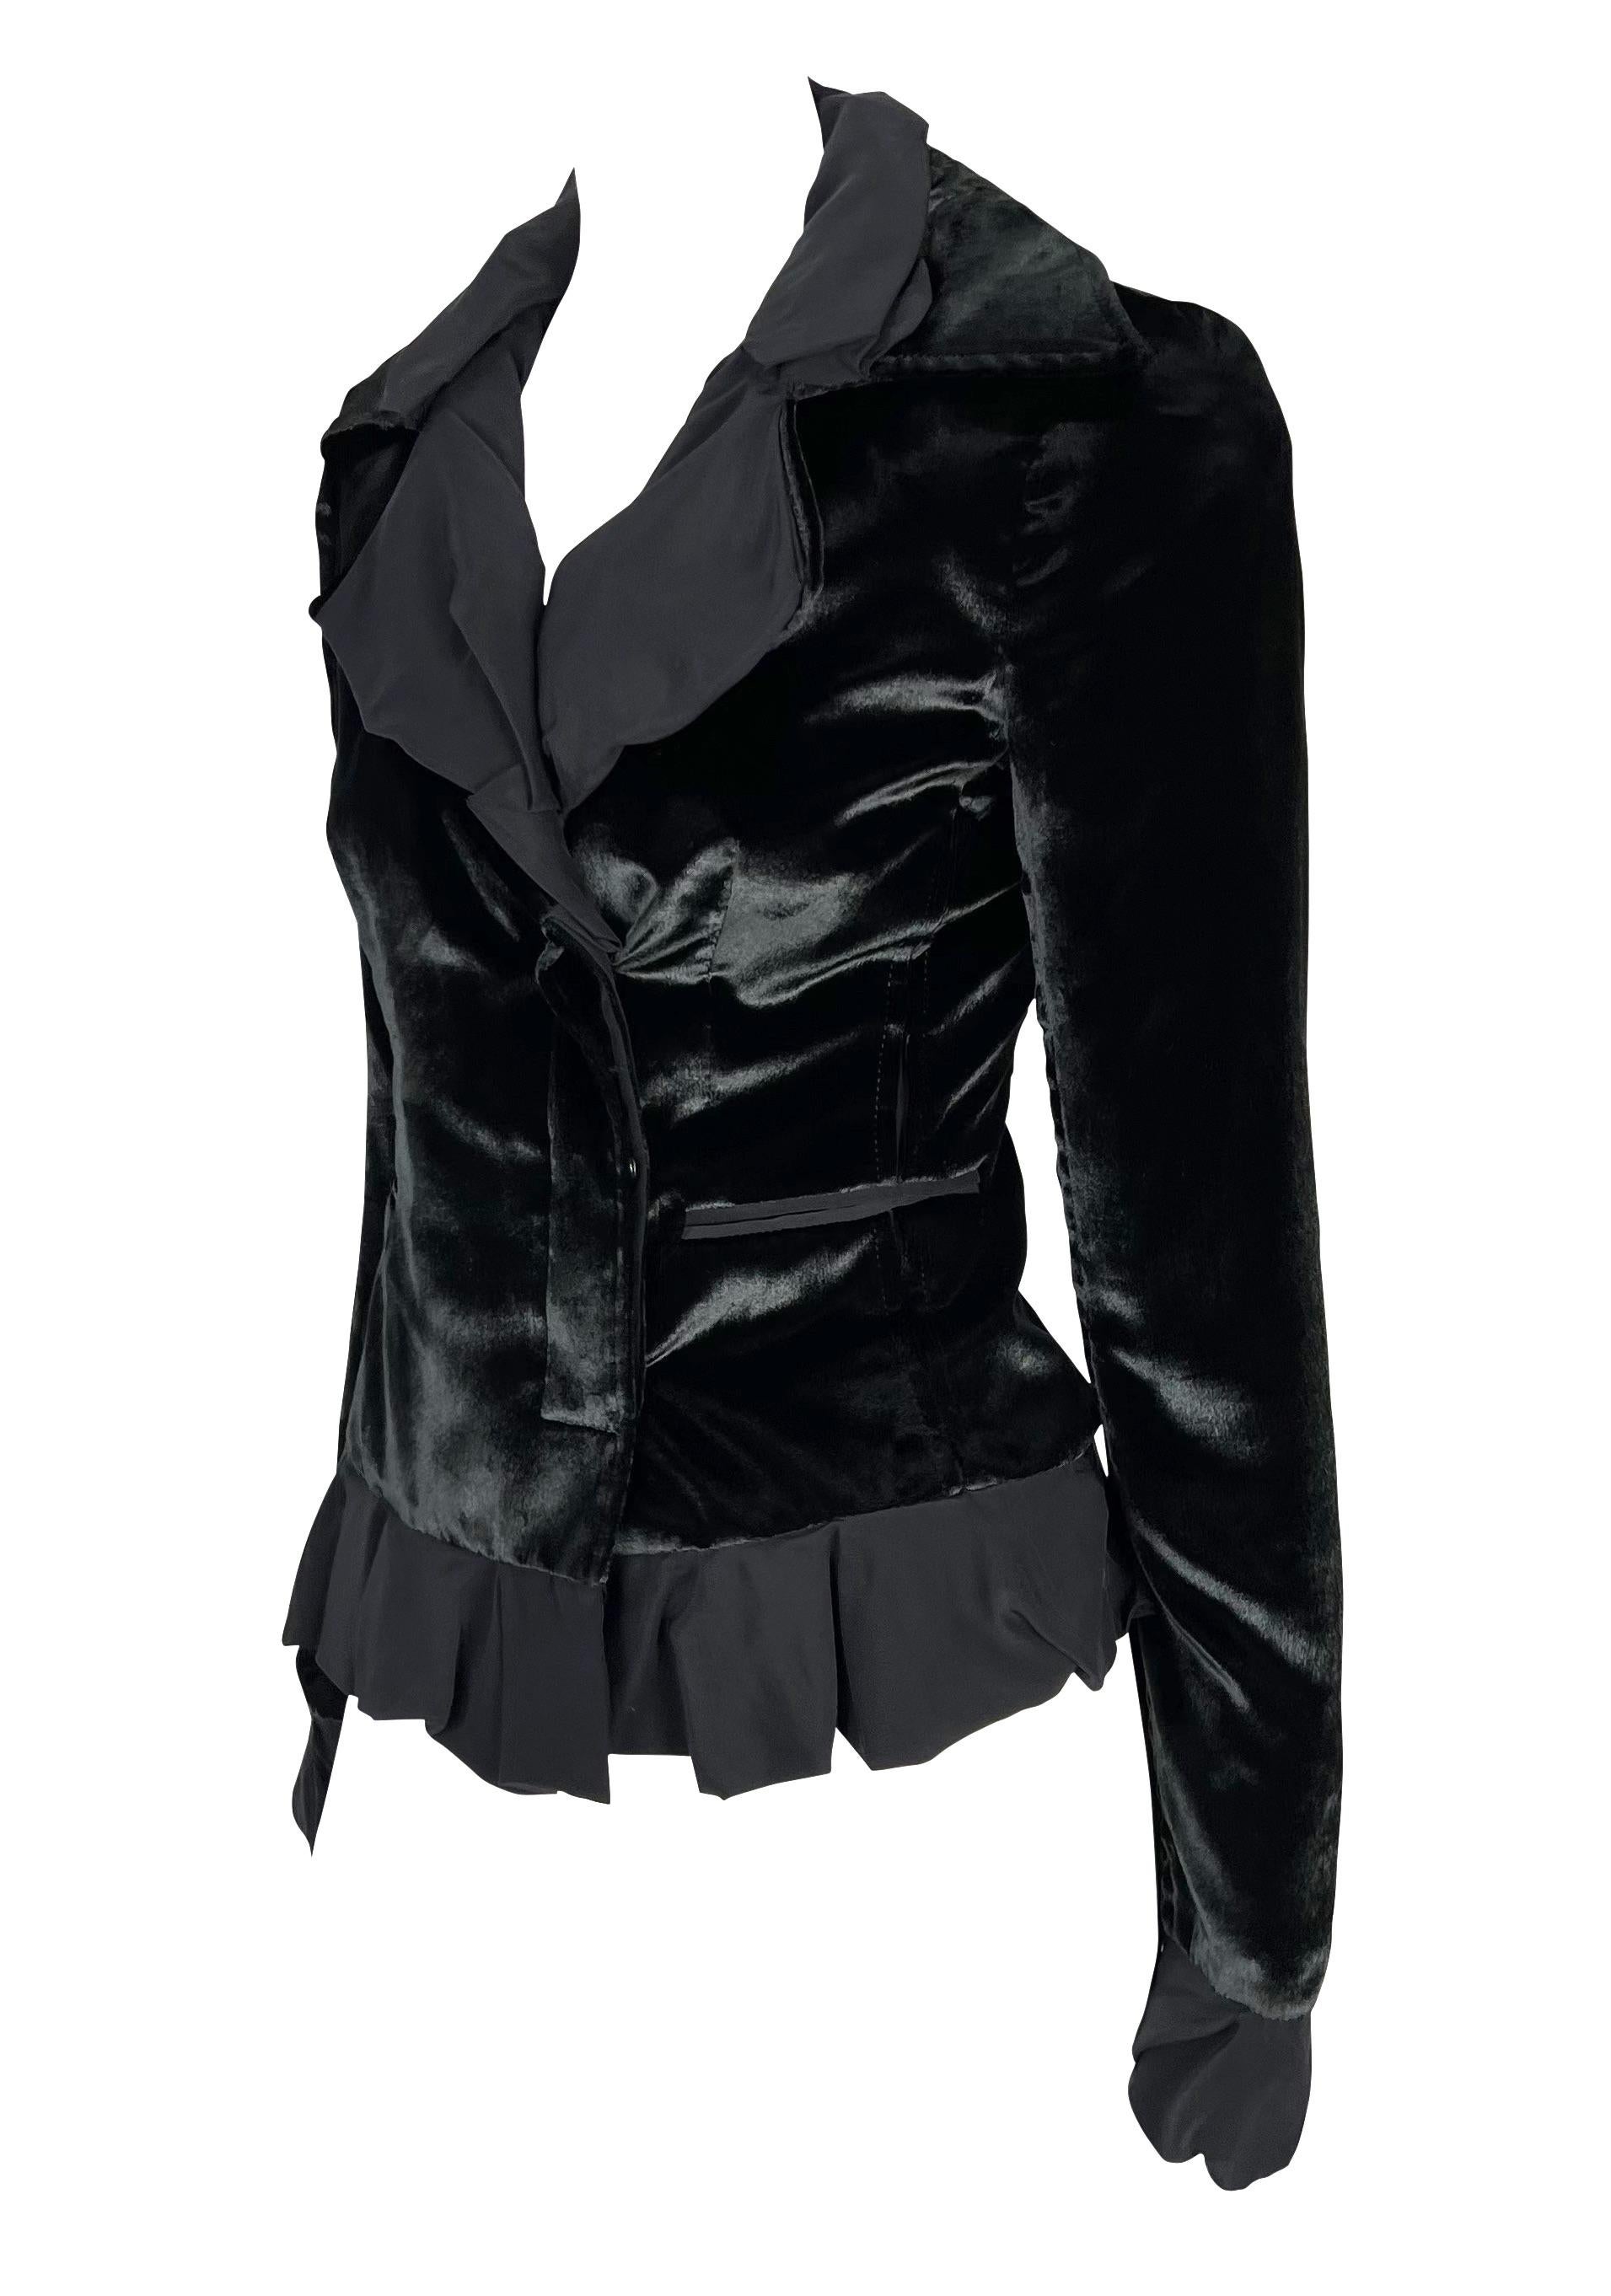 Voici un magnifique blazer Yves Saint Laurent en velours noir, dessiné par Tom Ford. Issu de la collection Automne/Hiver 2002, ce magnifique blazer est réalisé en velours noir chatoyant et présente des volants de mousseline à l'ourlet, au col et aux